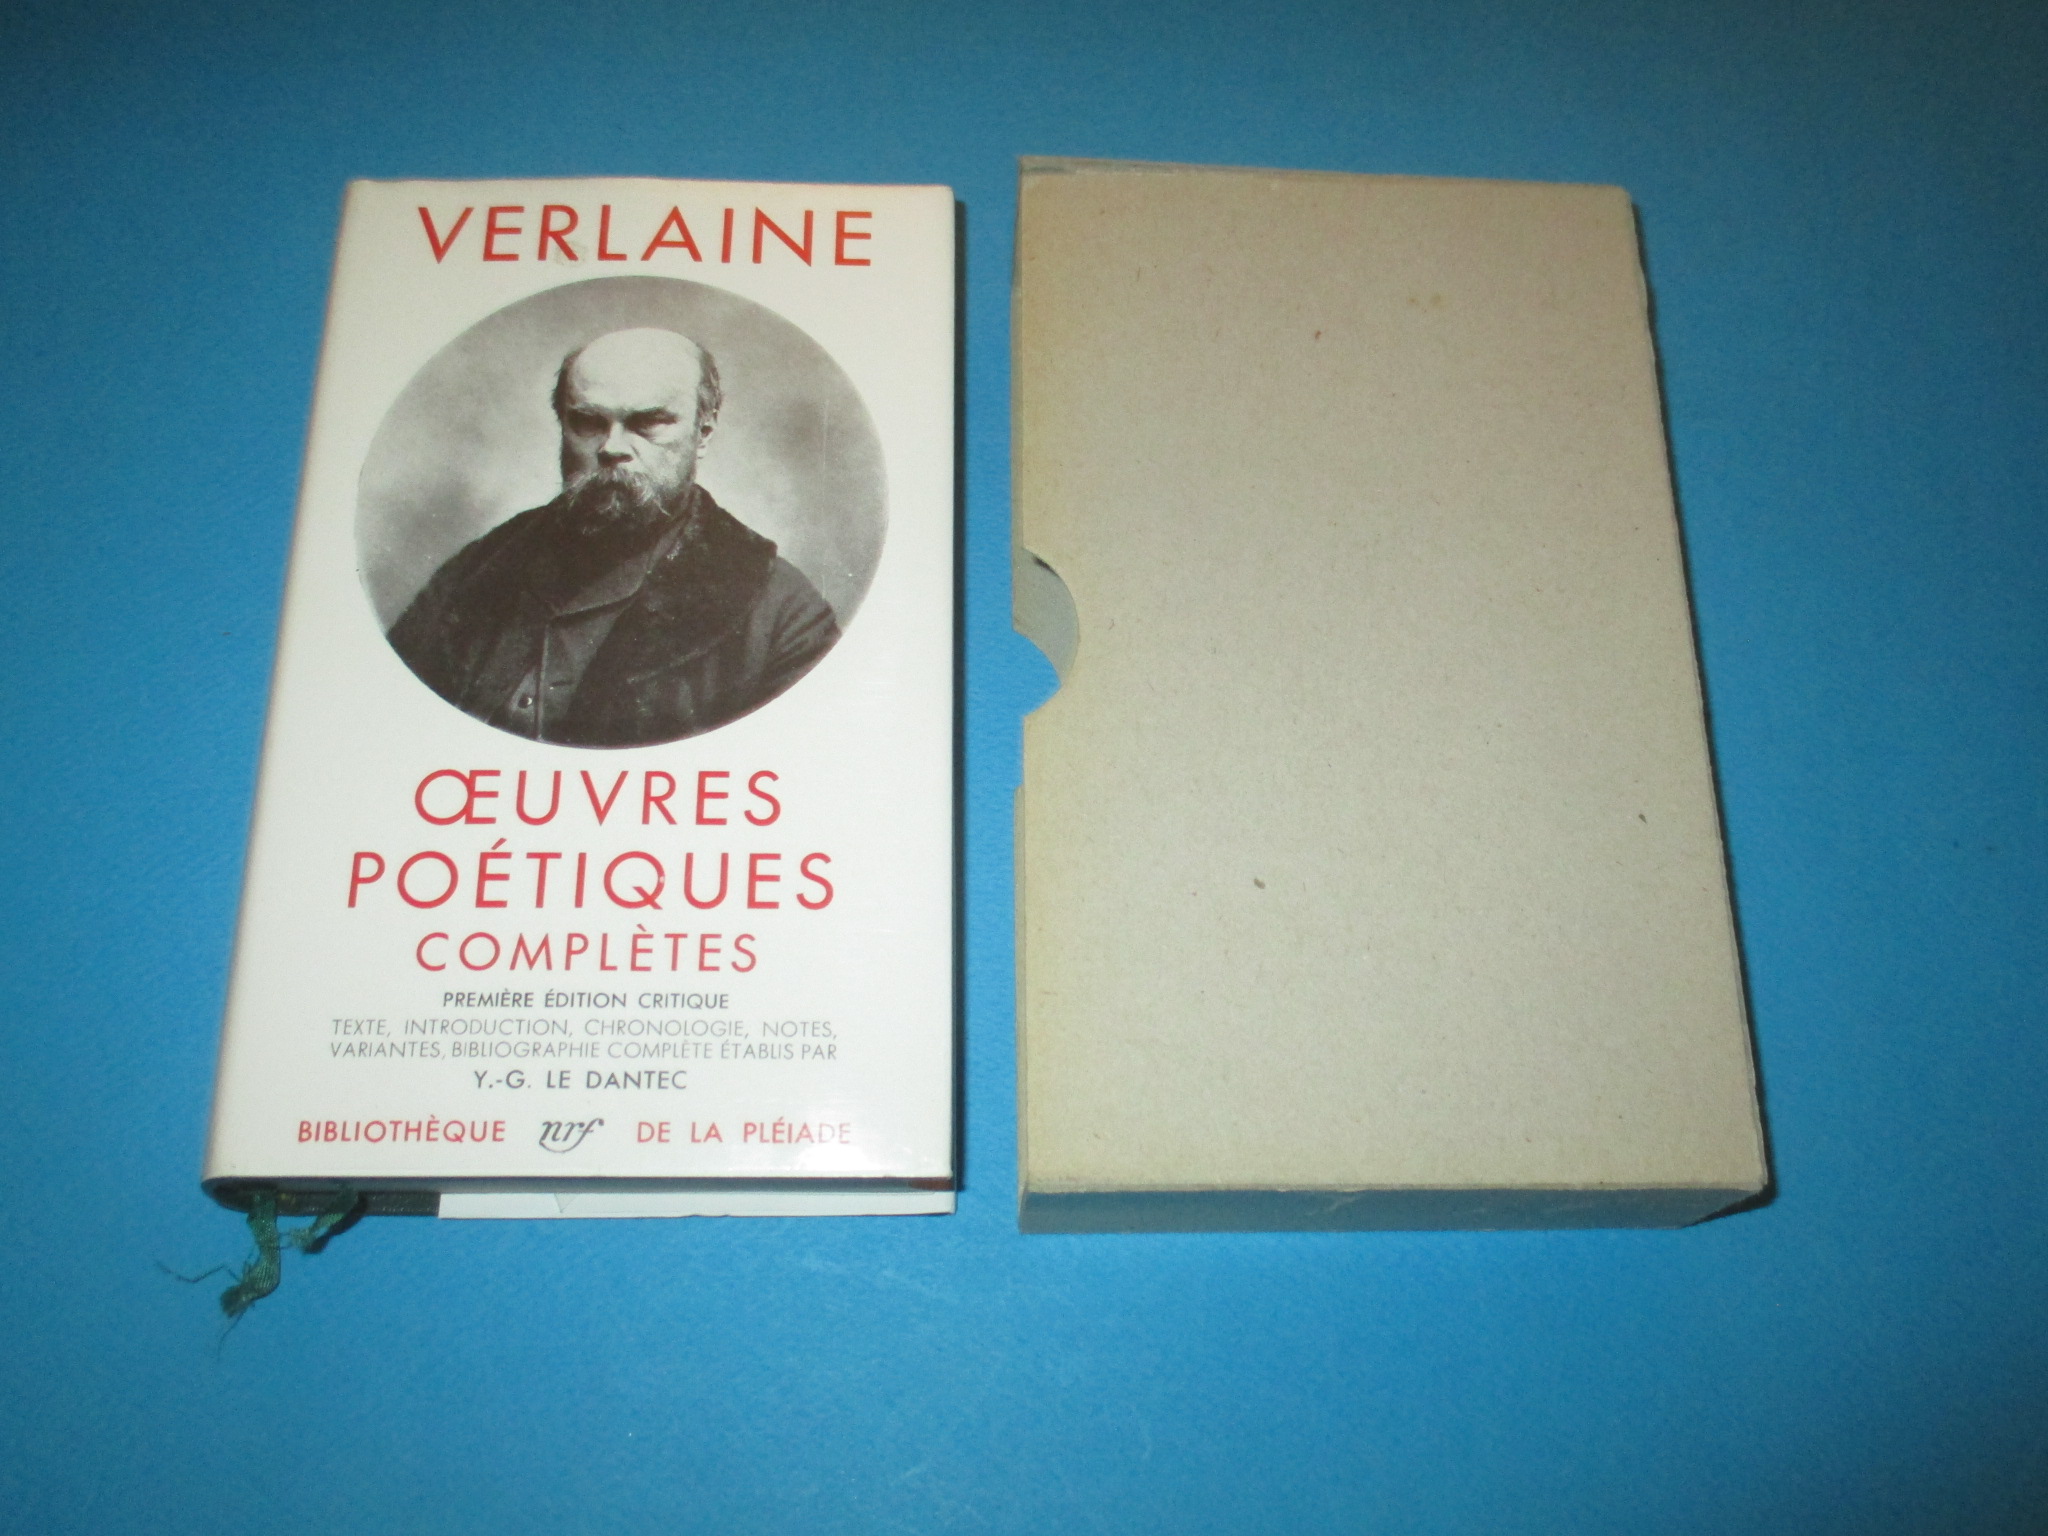 Oeuvres Poétiques Complètes, Verlaine, Première édition critique, La Pléiade 1957